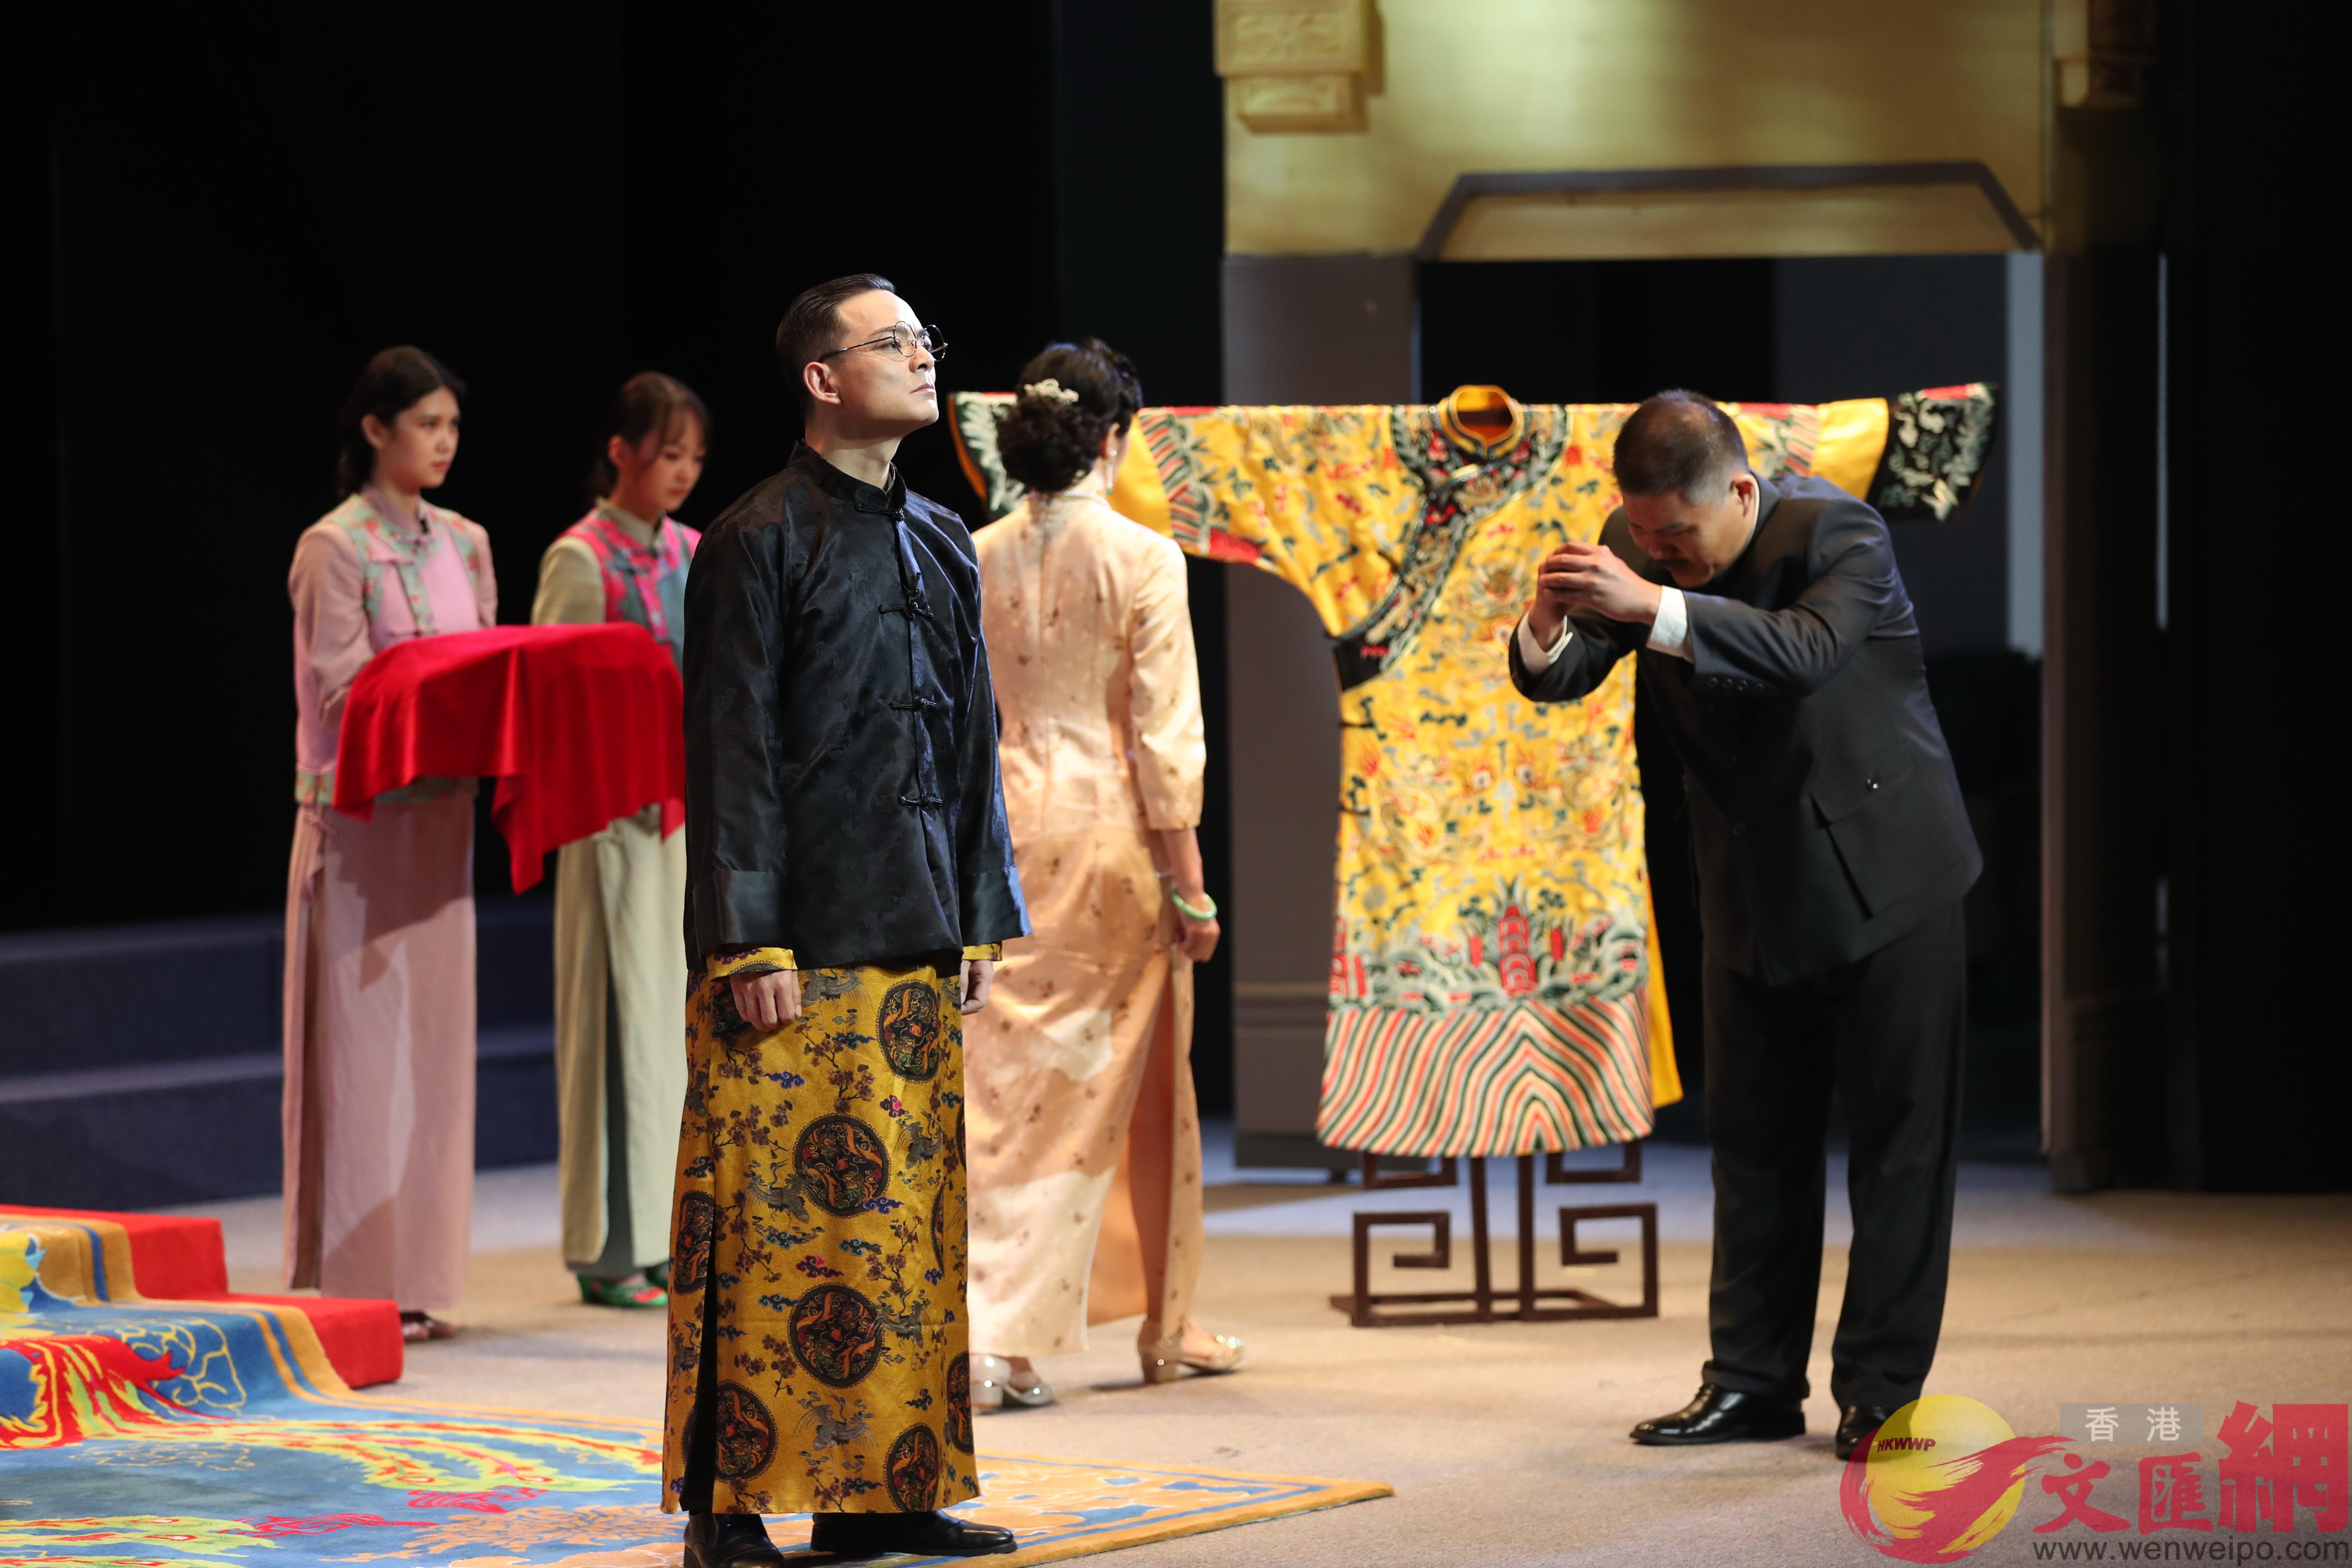 劇中溥儀在u新京v剛剛準備登基的一幕C]記者 盧冶 攝^